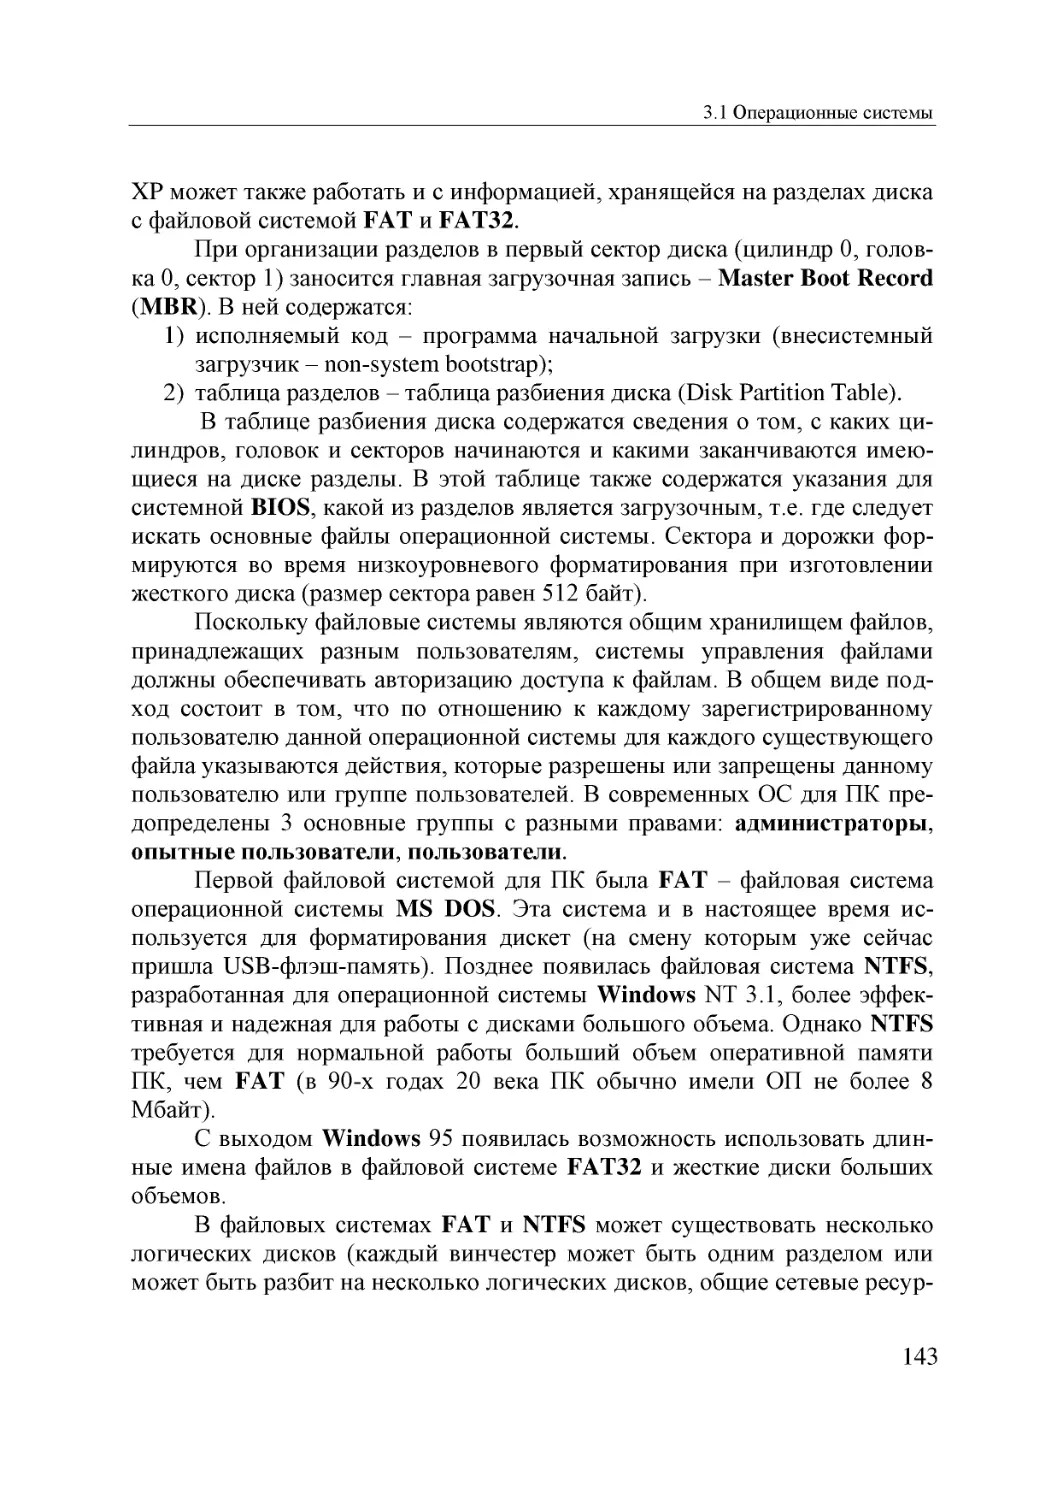 Informatika_Uchebnik_dlya_vuzov_2010 143